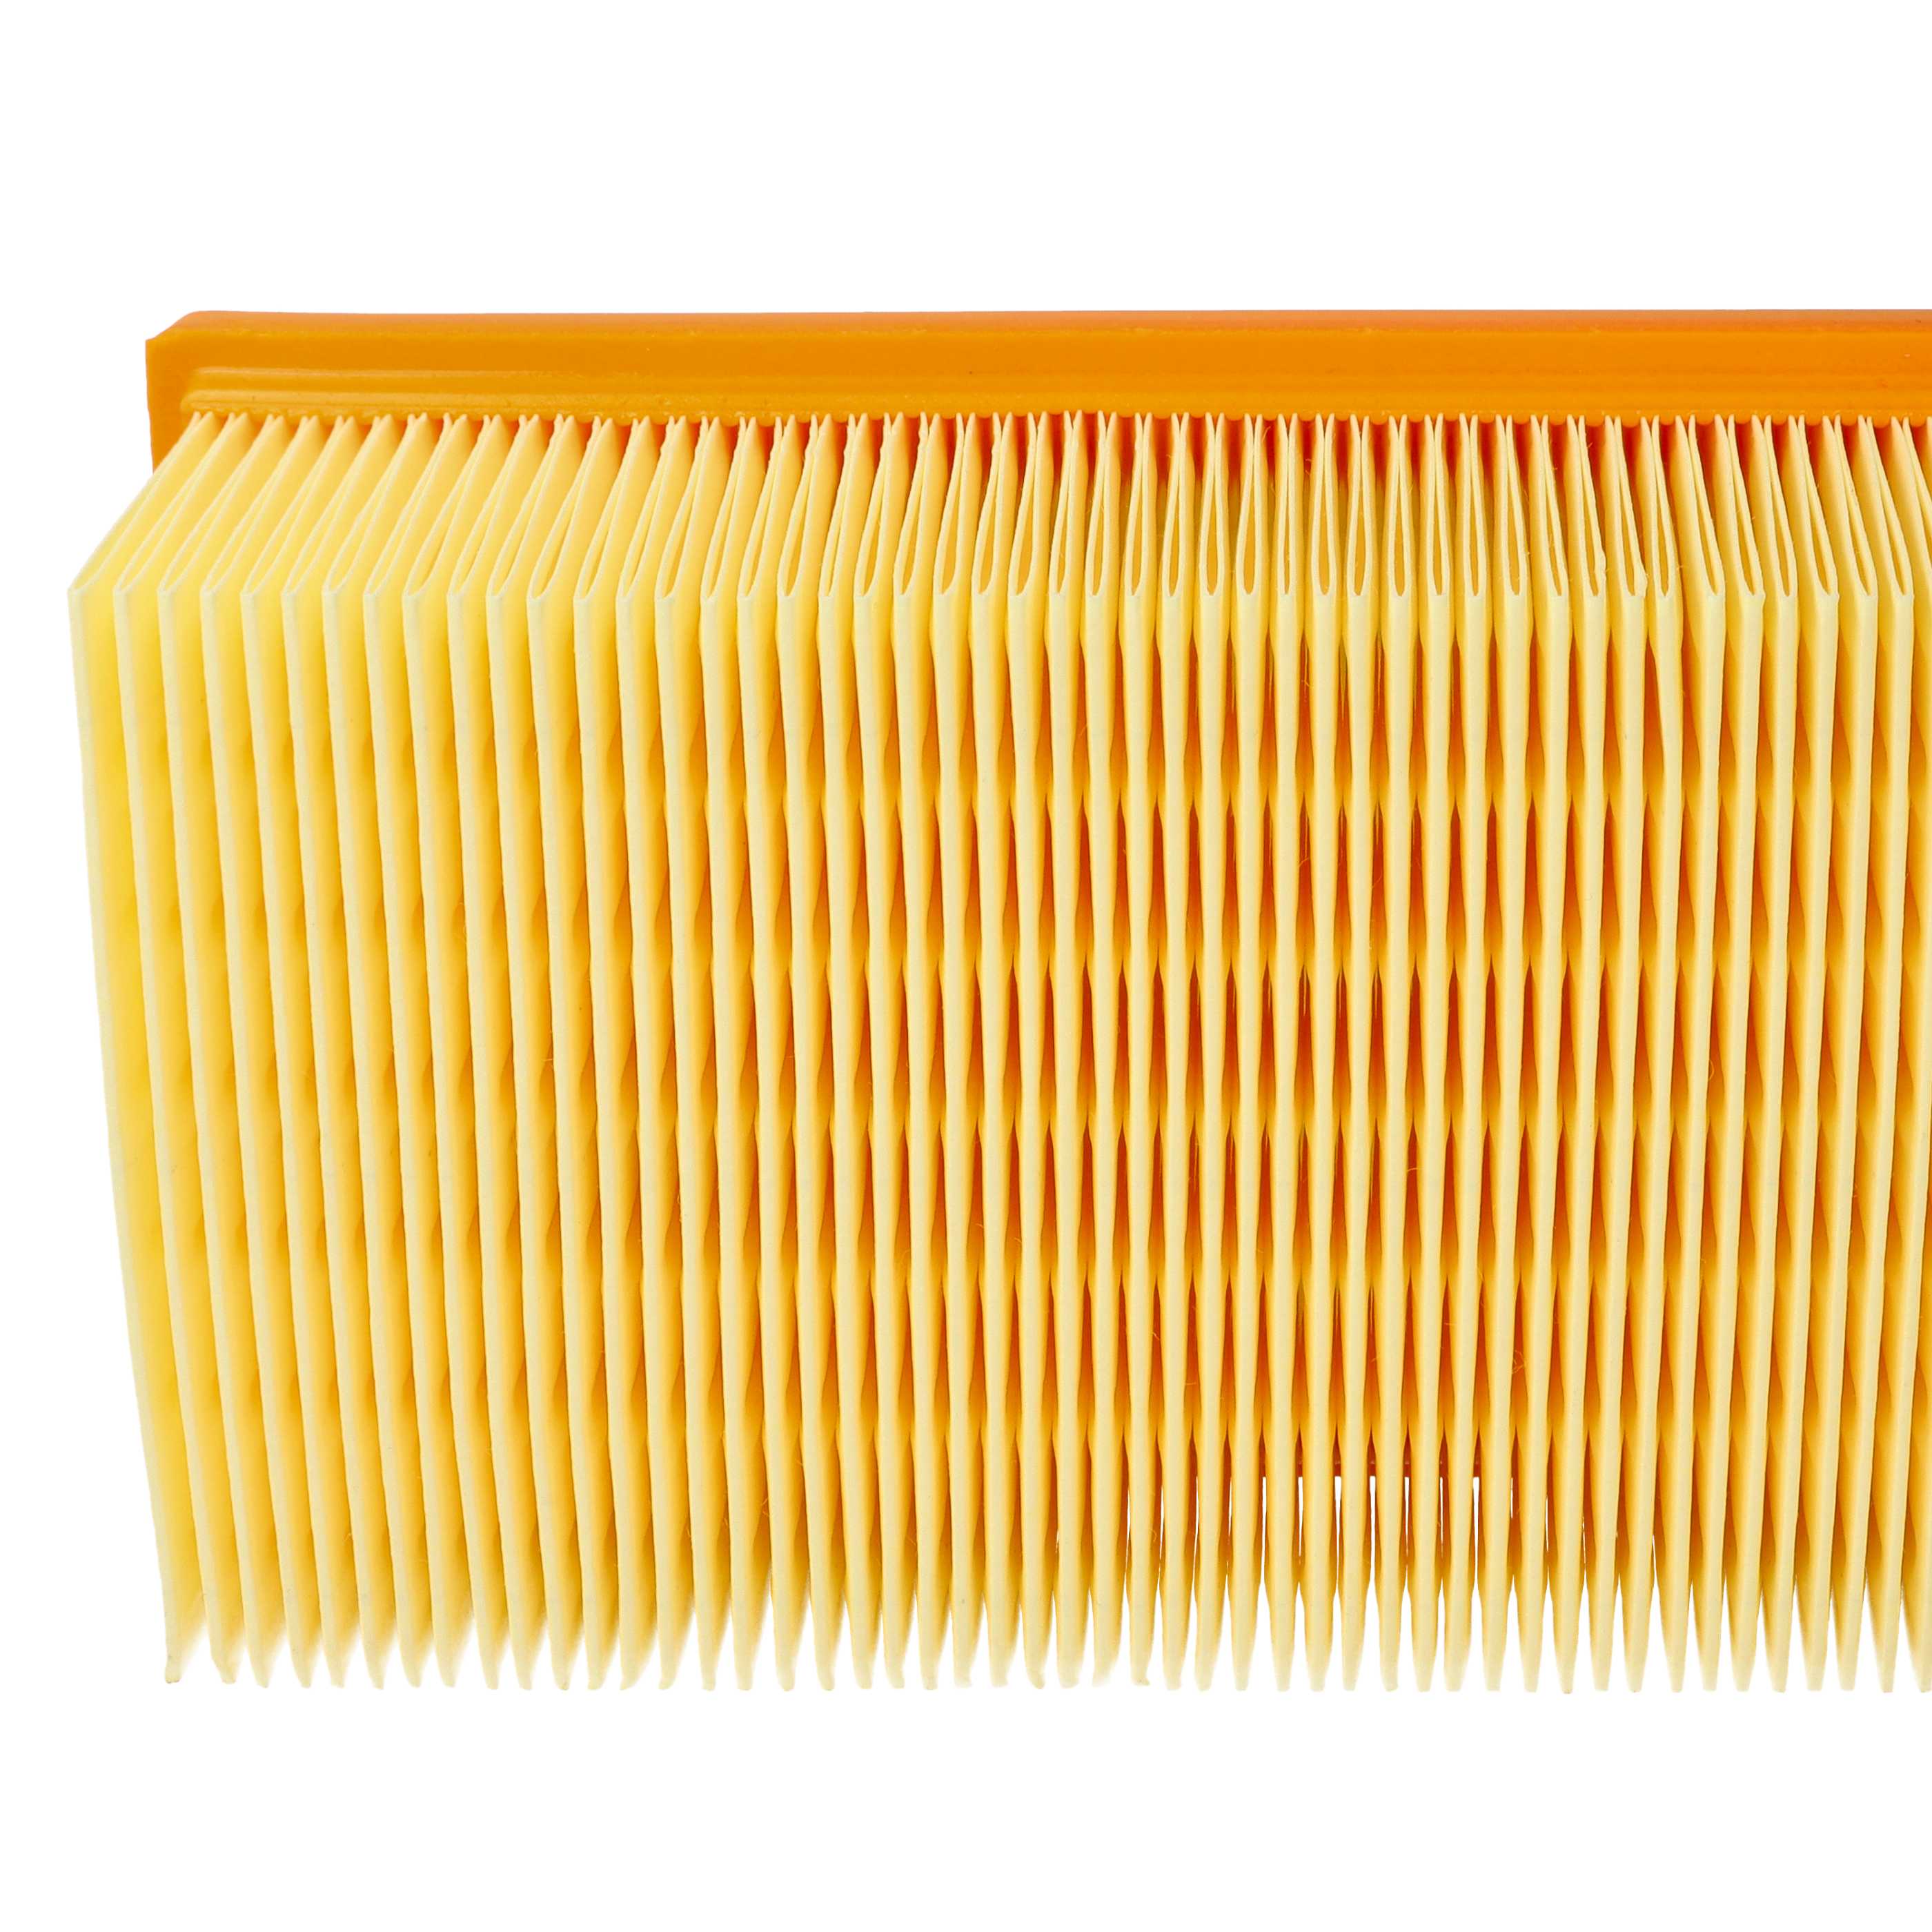 1x flat pleated filter replaces Festool 452923, 500558 for KränzleVacuum Cleaner